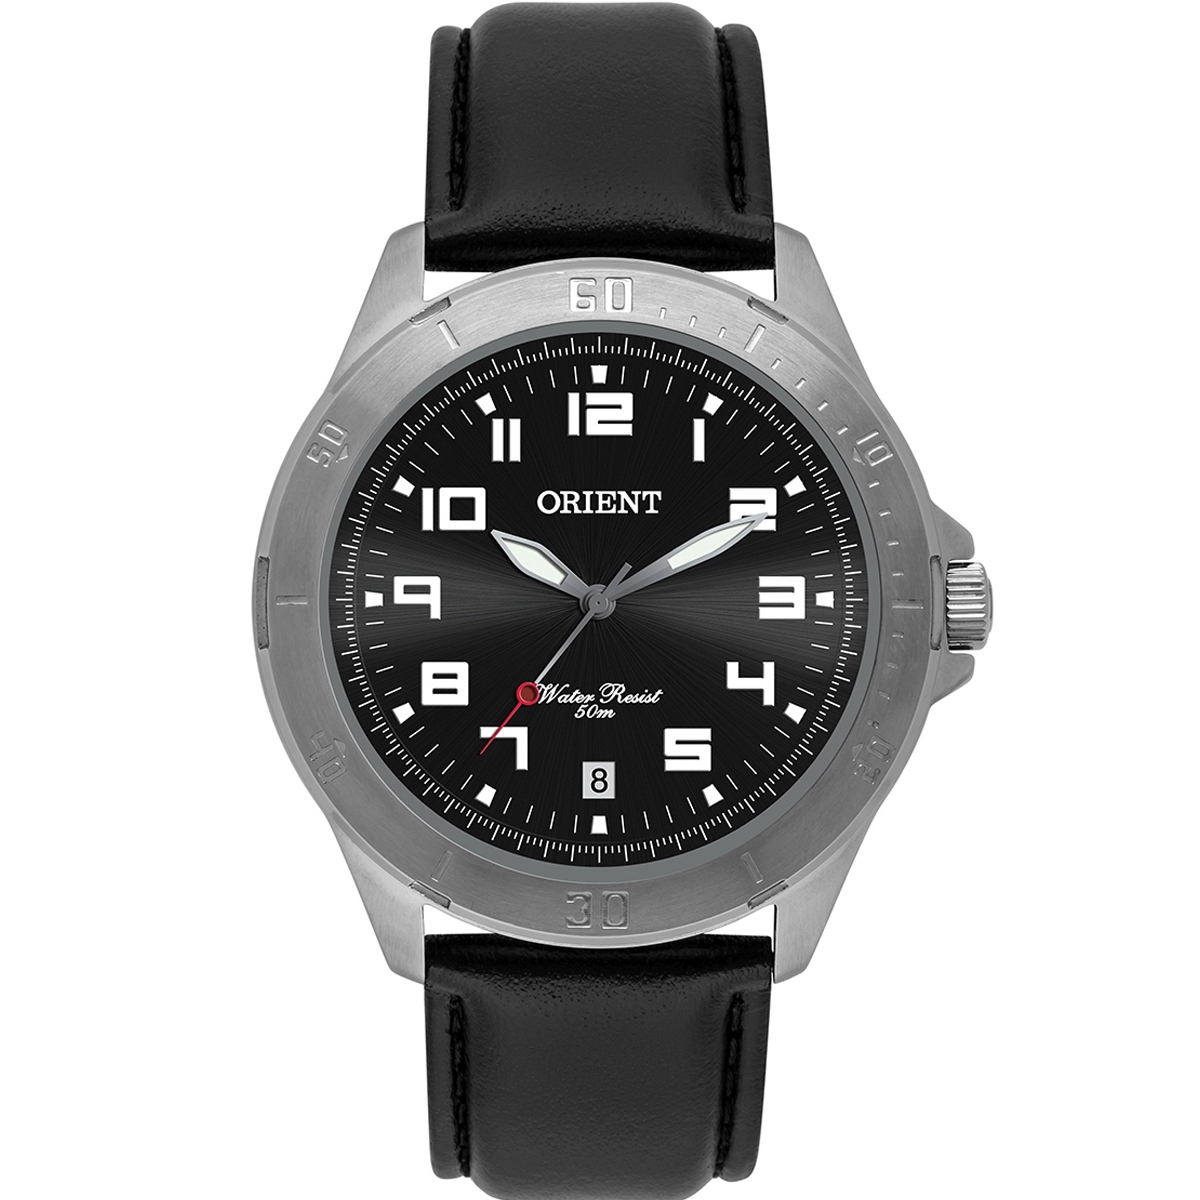 Relógio Orient Masculino Prata MBSC1032 G2PX